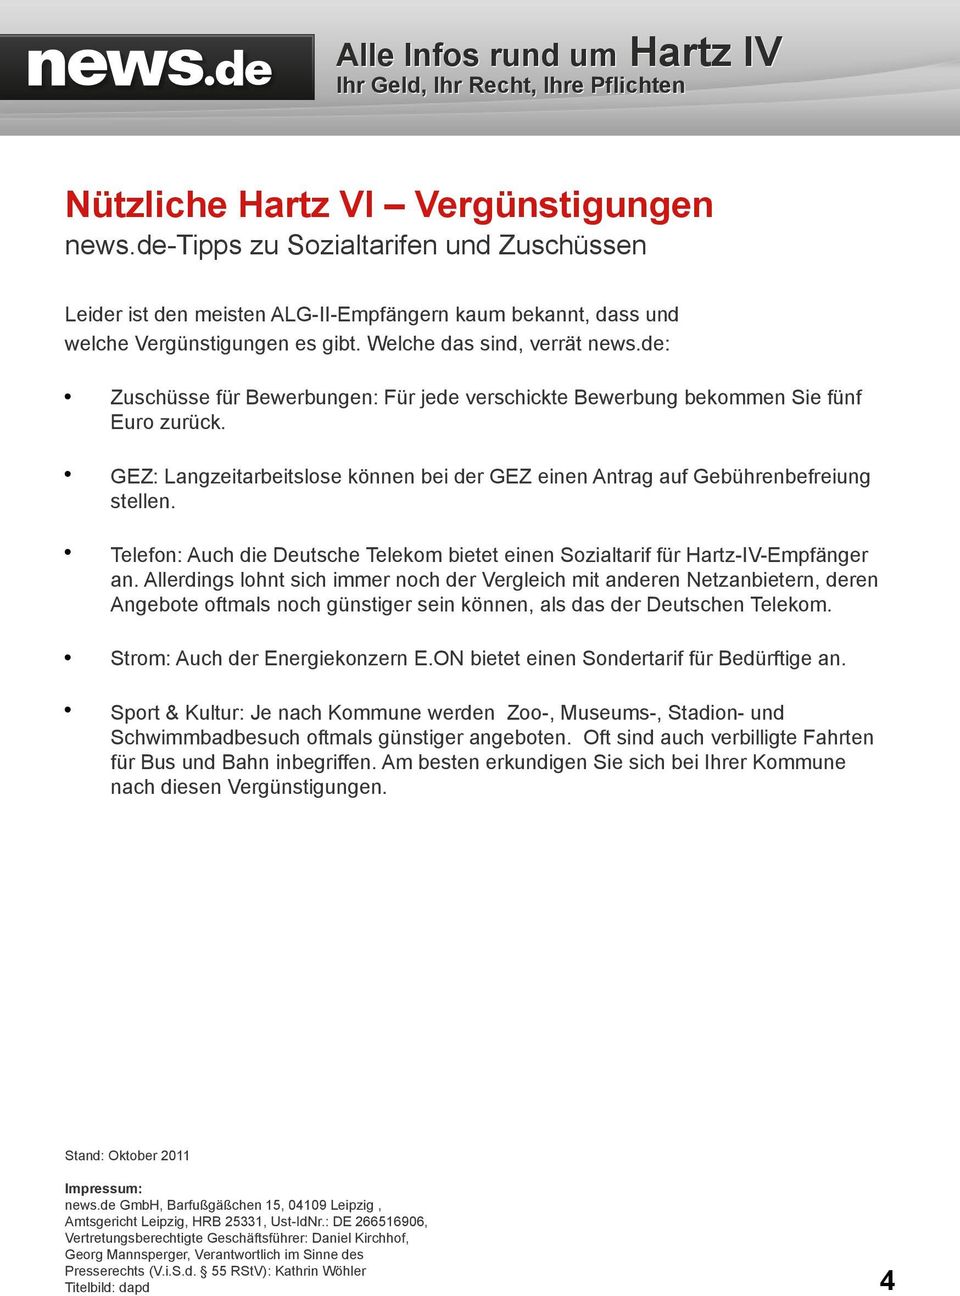 GEZ: Langzeitarbeitslose können bei der GEZ einen Antrag auf Gebührenbefreiung stellen. Telefon: Auch die Deutsche Telekom bietet einen Sozialtarif für Hartz-IV-Empfänger an.